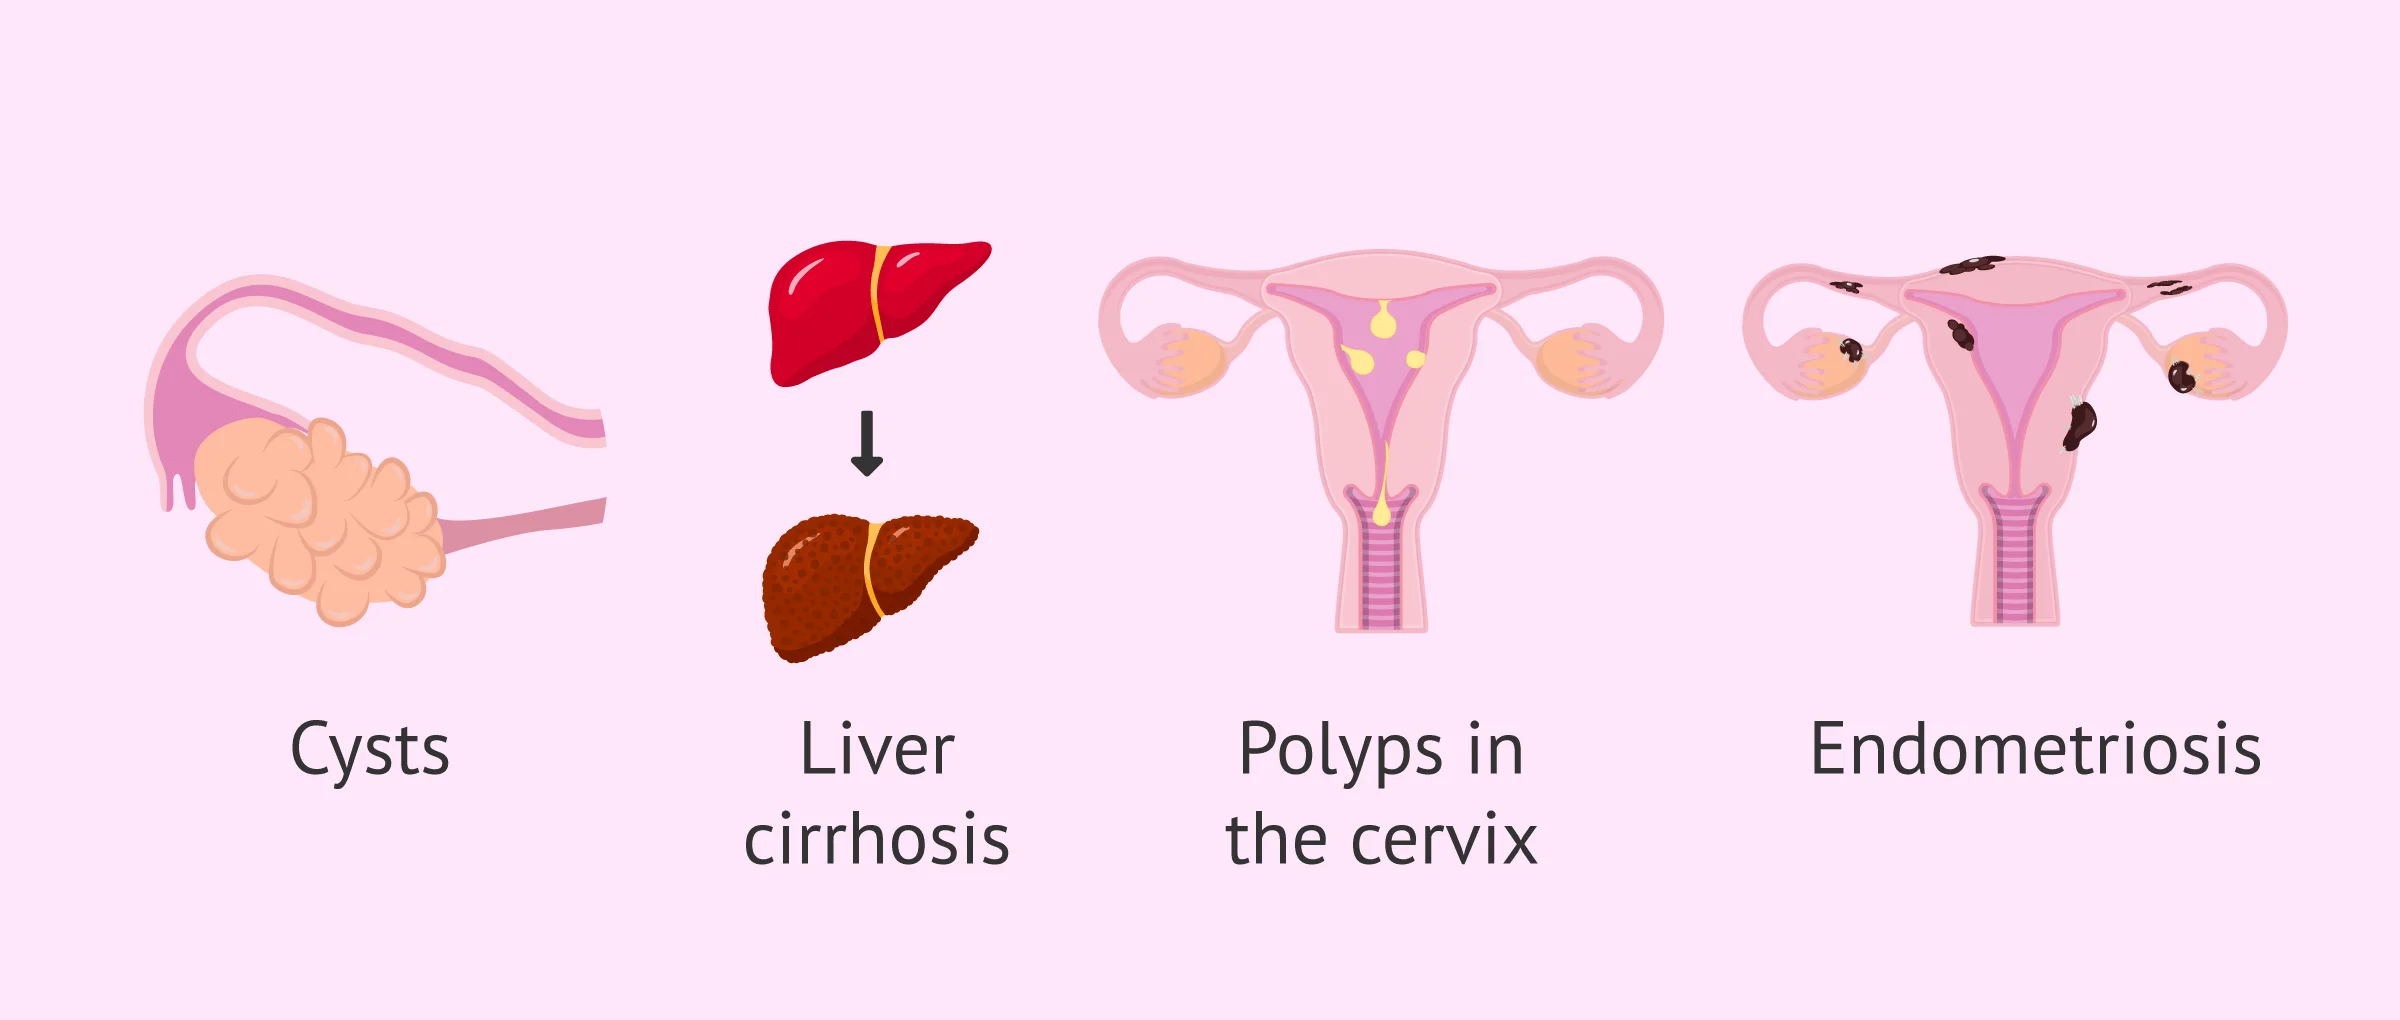 Risk factors for endometrial hyperplasia